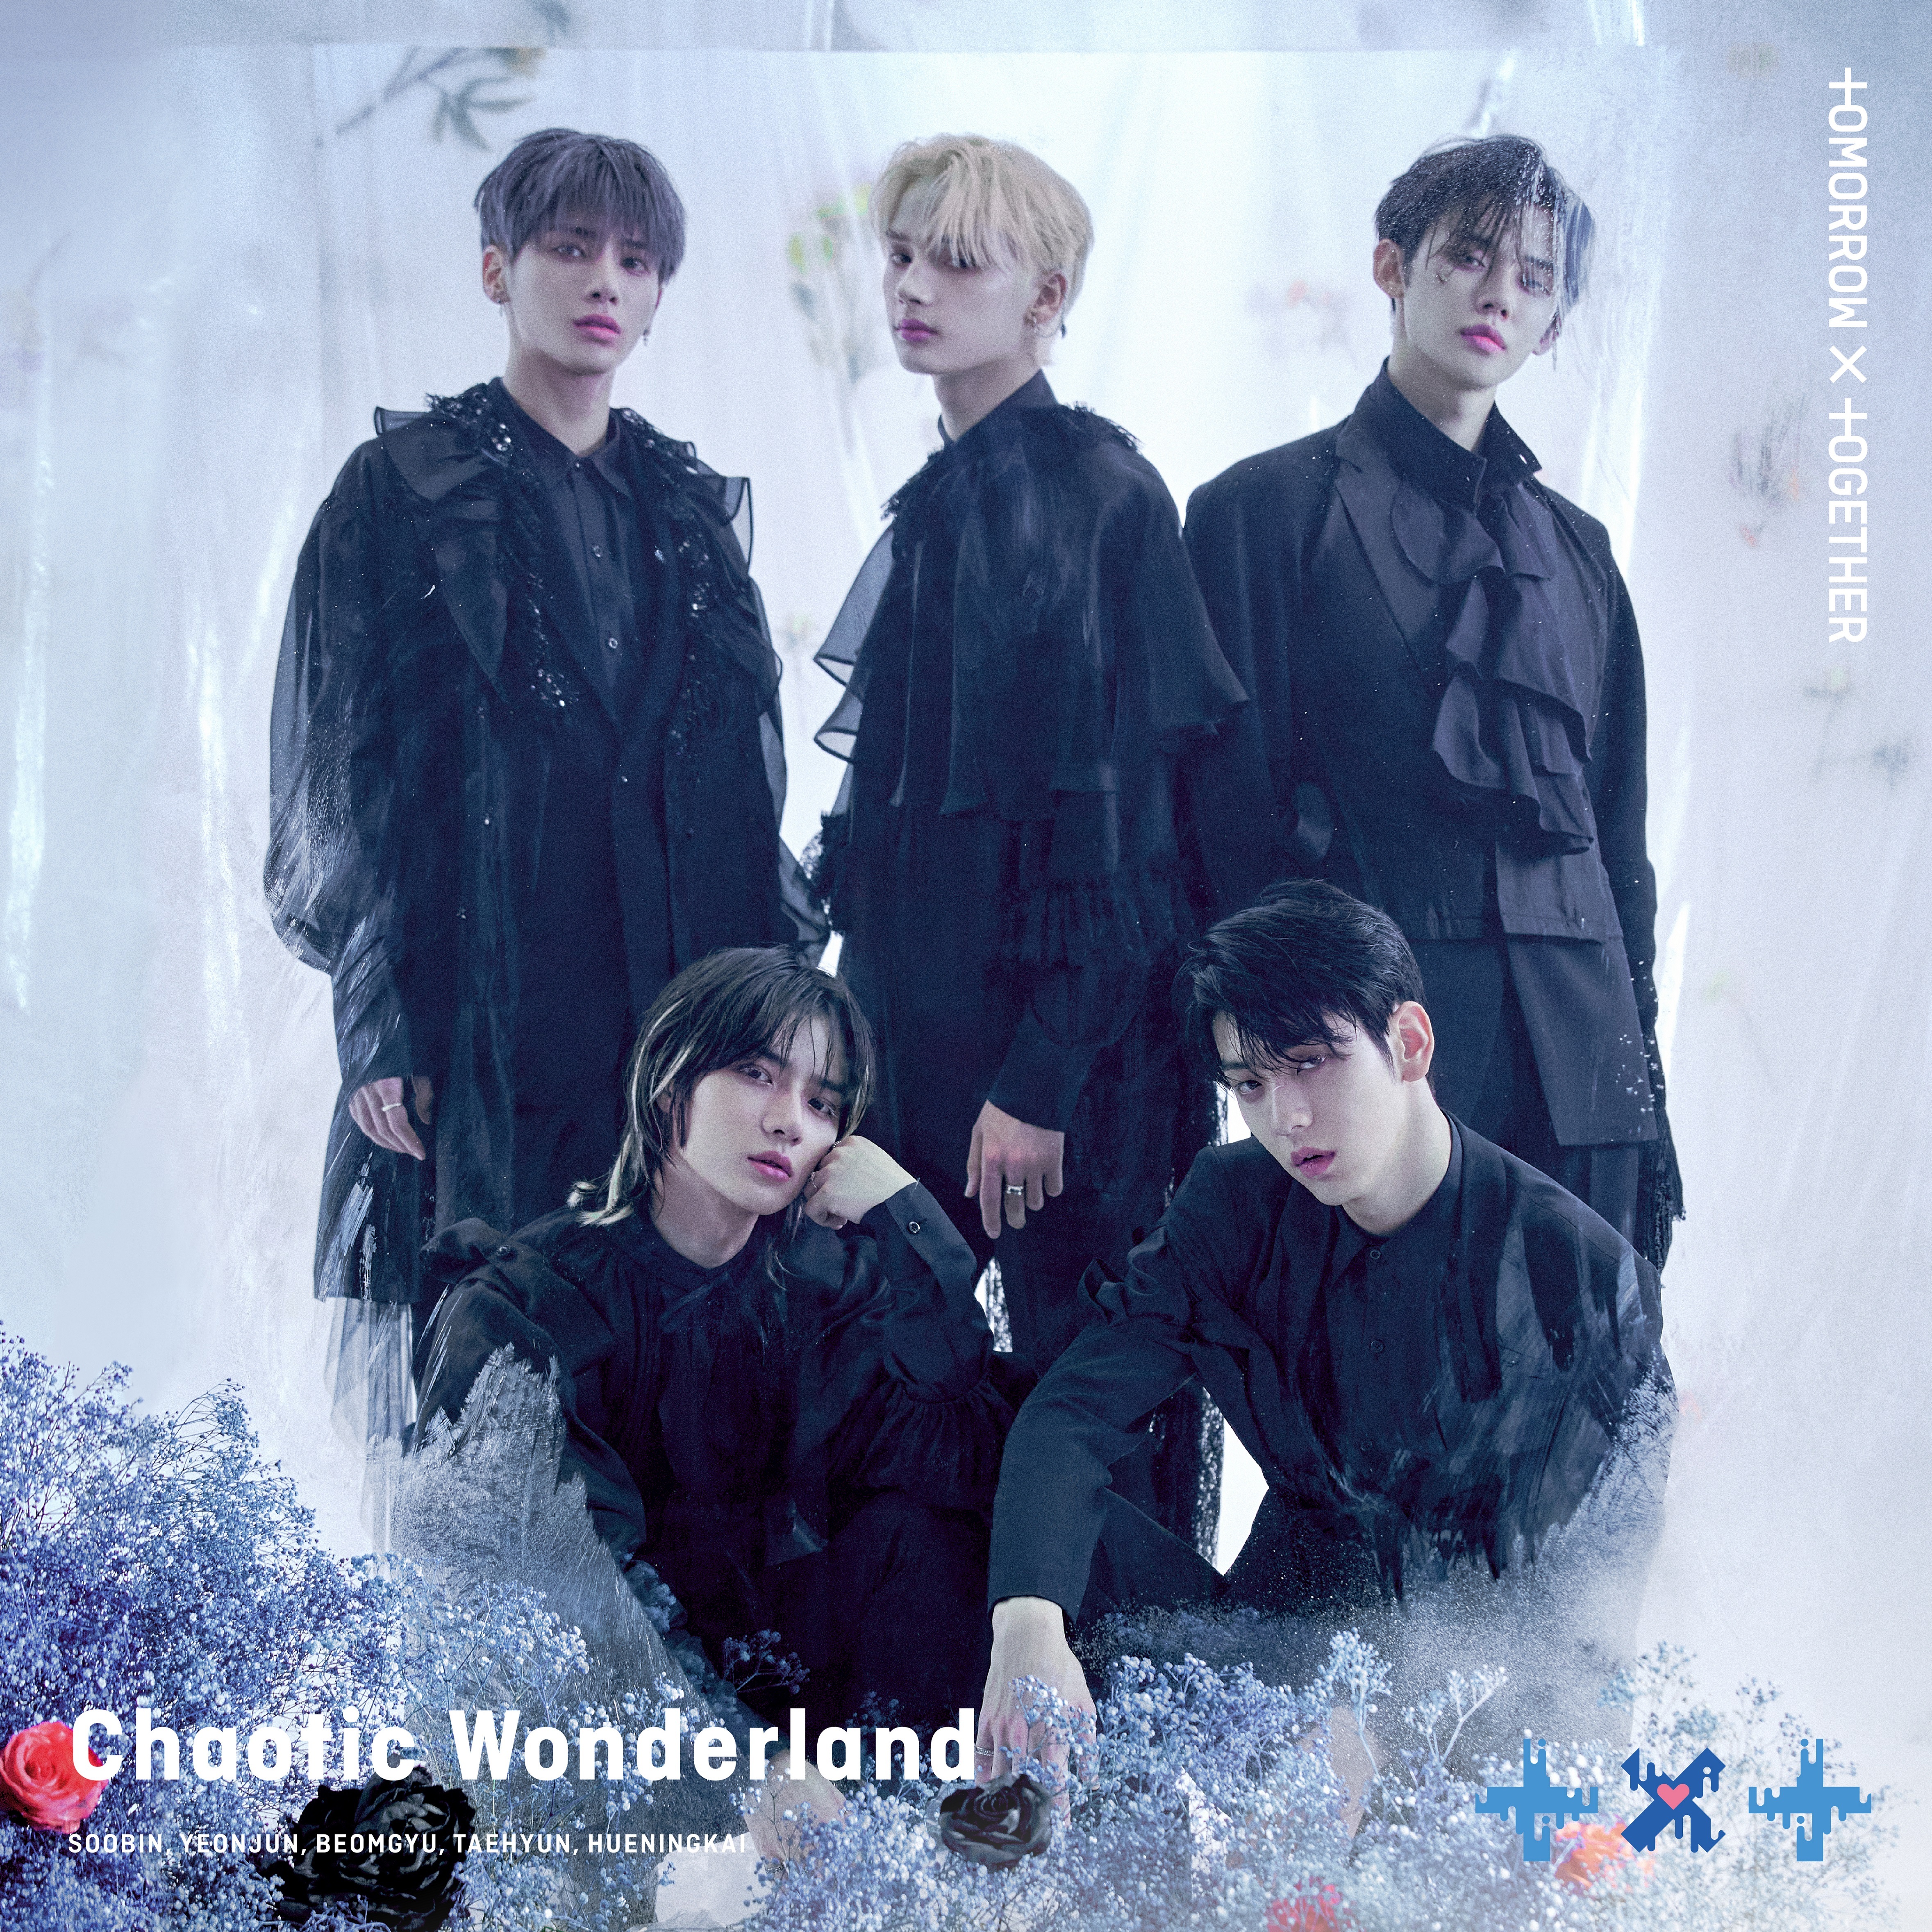 [情報] TXT 首張日文EP Chaotic Wonderland